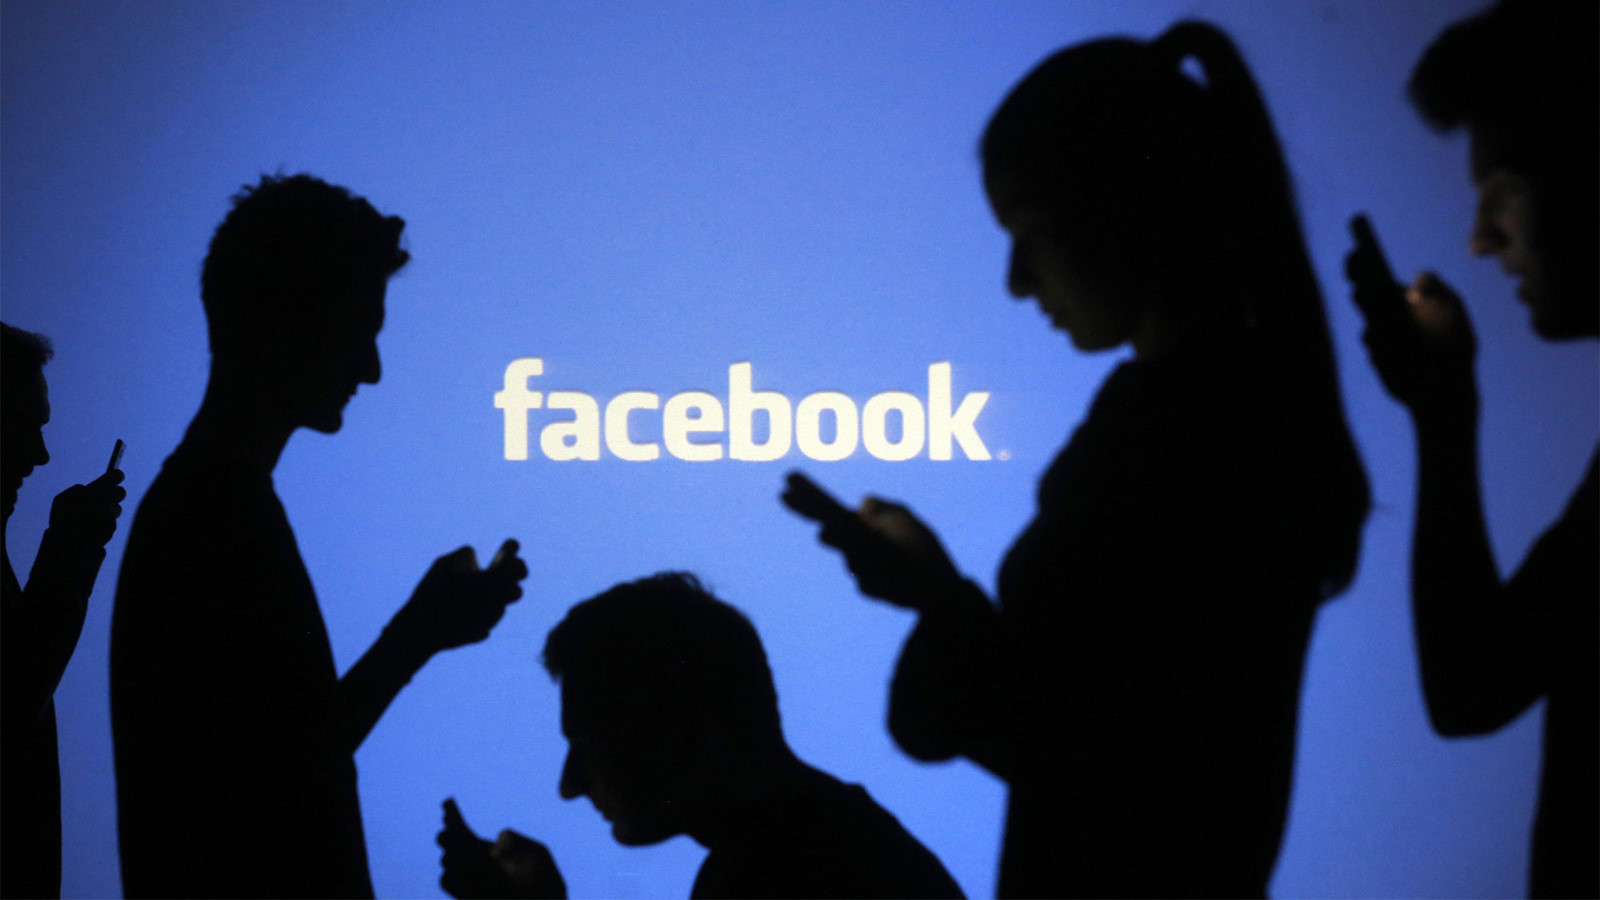 Công an TP.Cần Thơ sẽ xử lý nghiêm khắc các chủ tài khoản Facebook được xác định tung tin đồn thất thiệt - Ảnh minh họa: Reuters